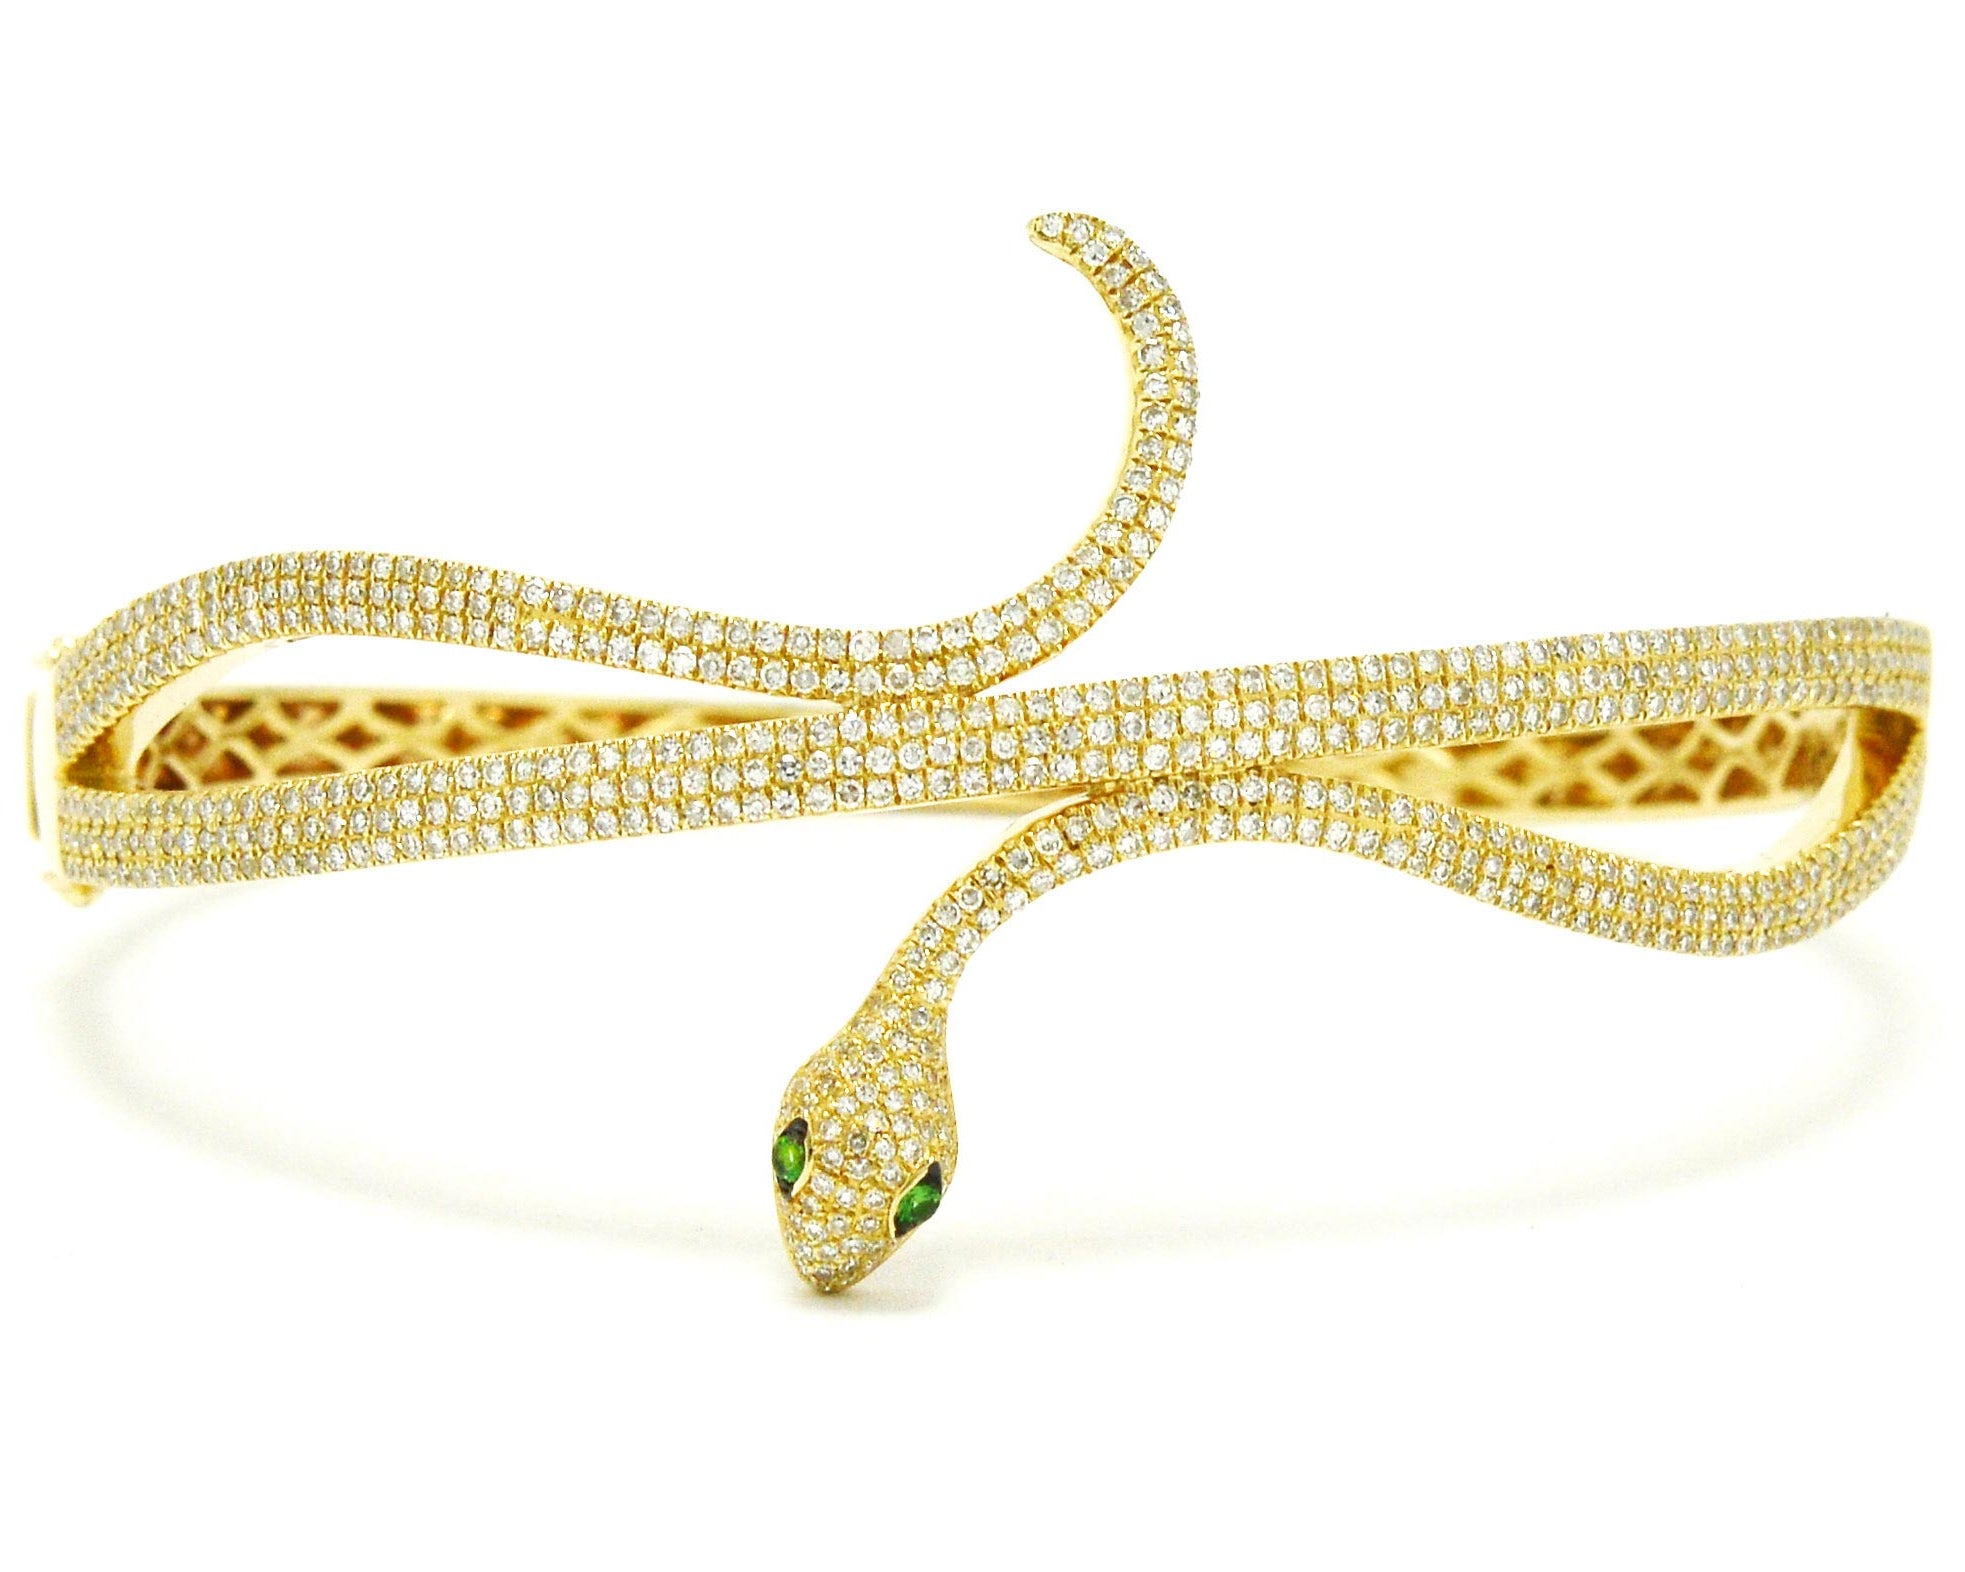 Gold and Diamond Snake Bracelet